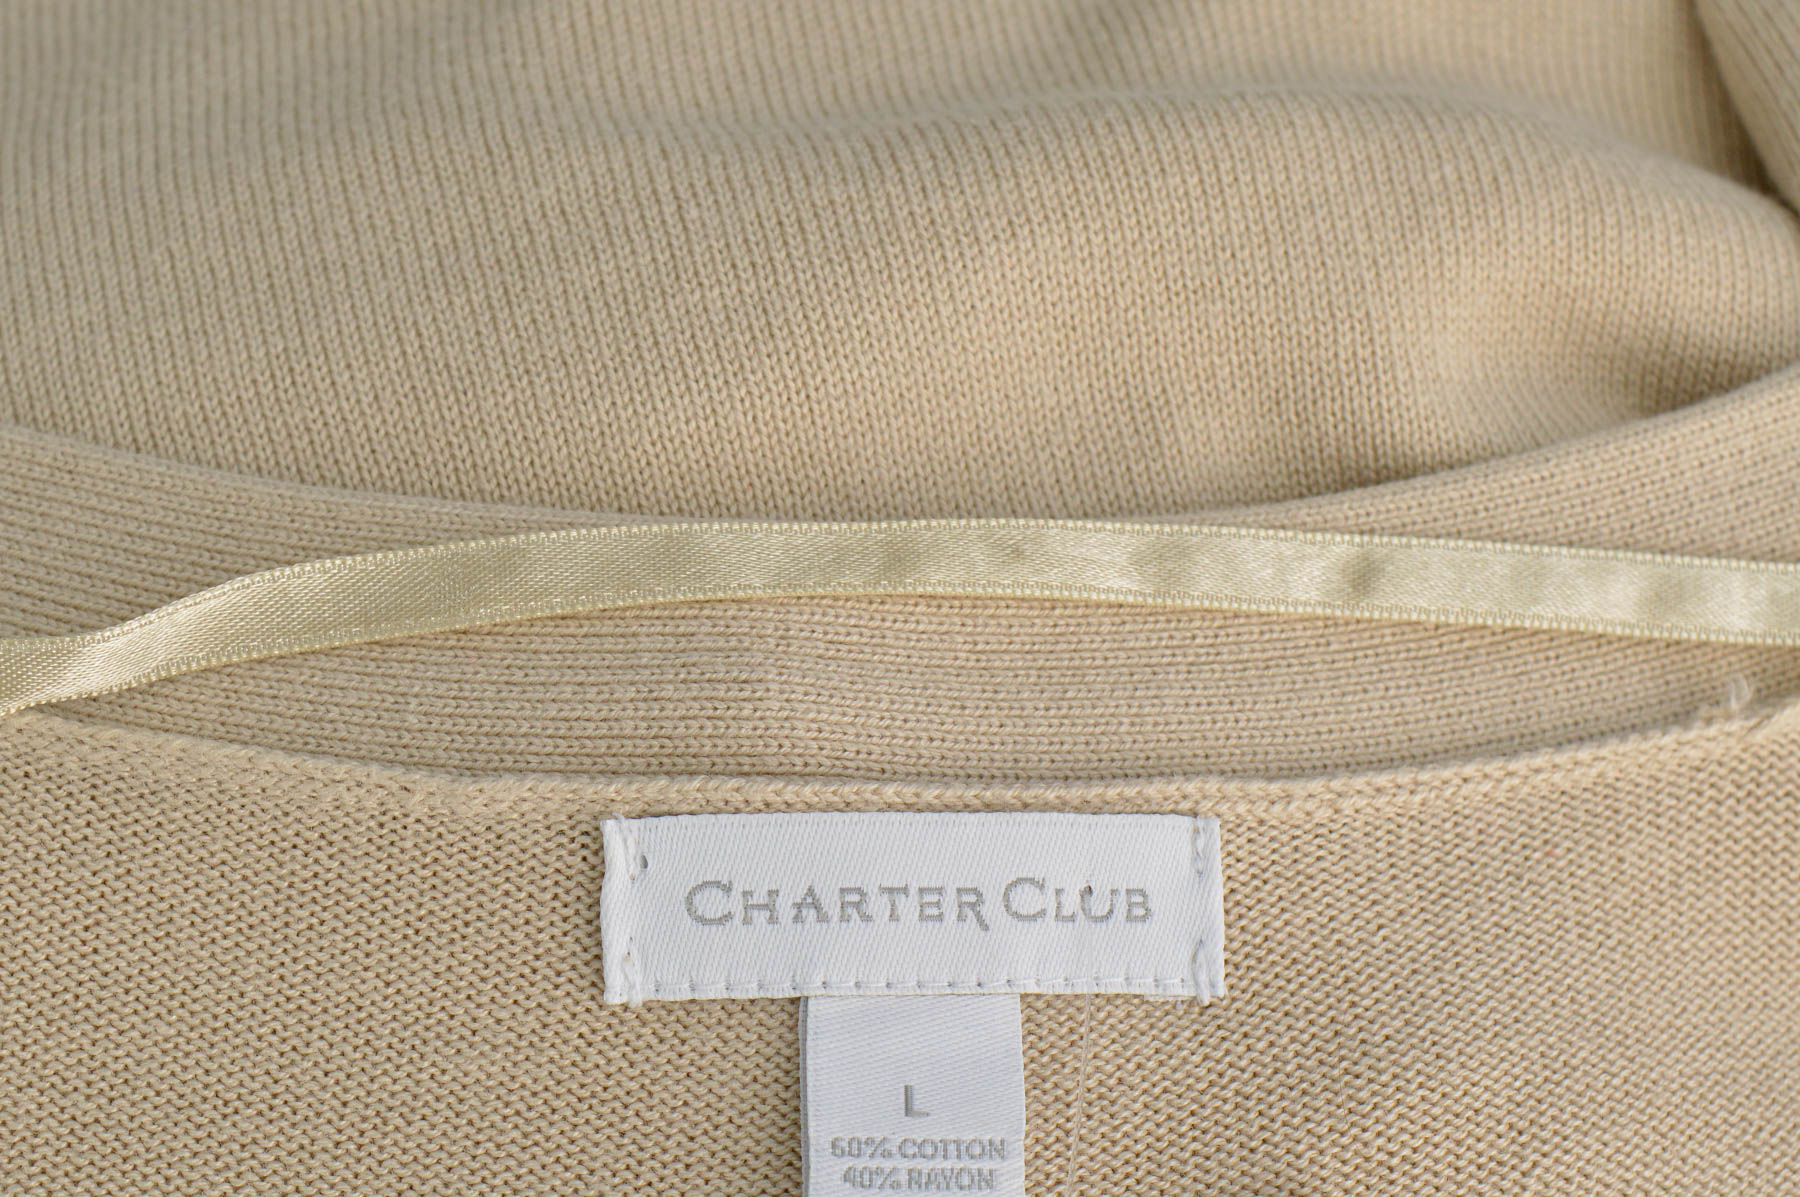 Дамска жилетка - Charter Club - 2